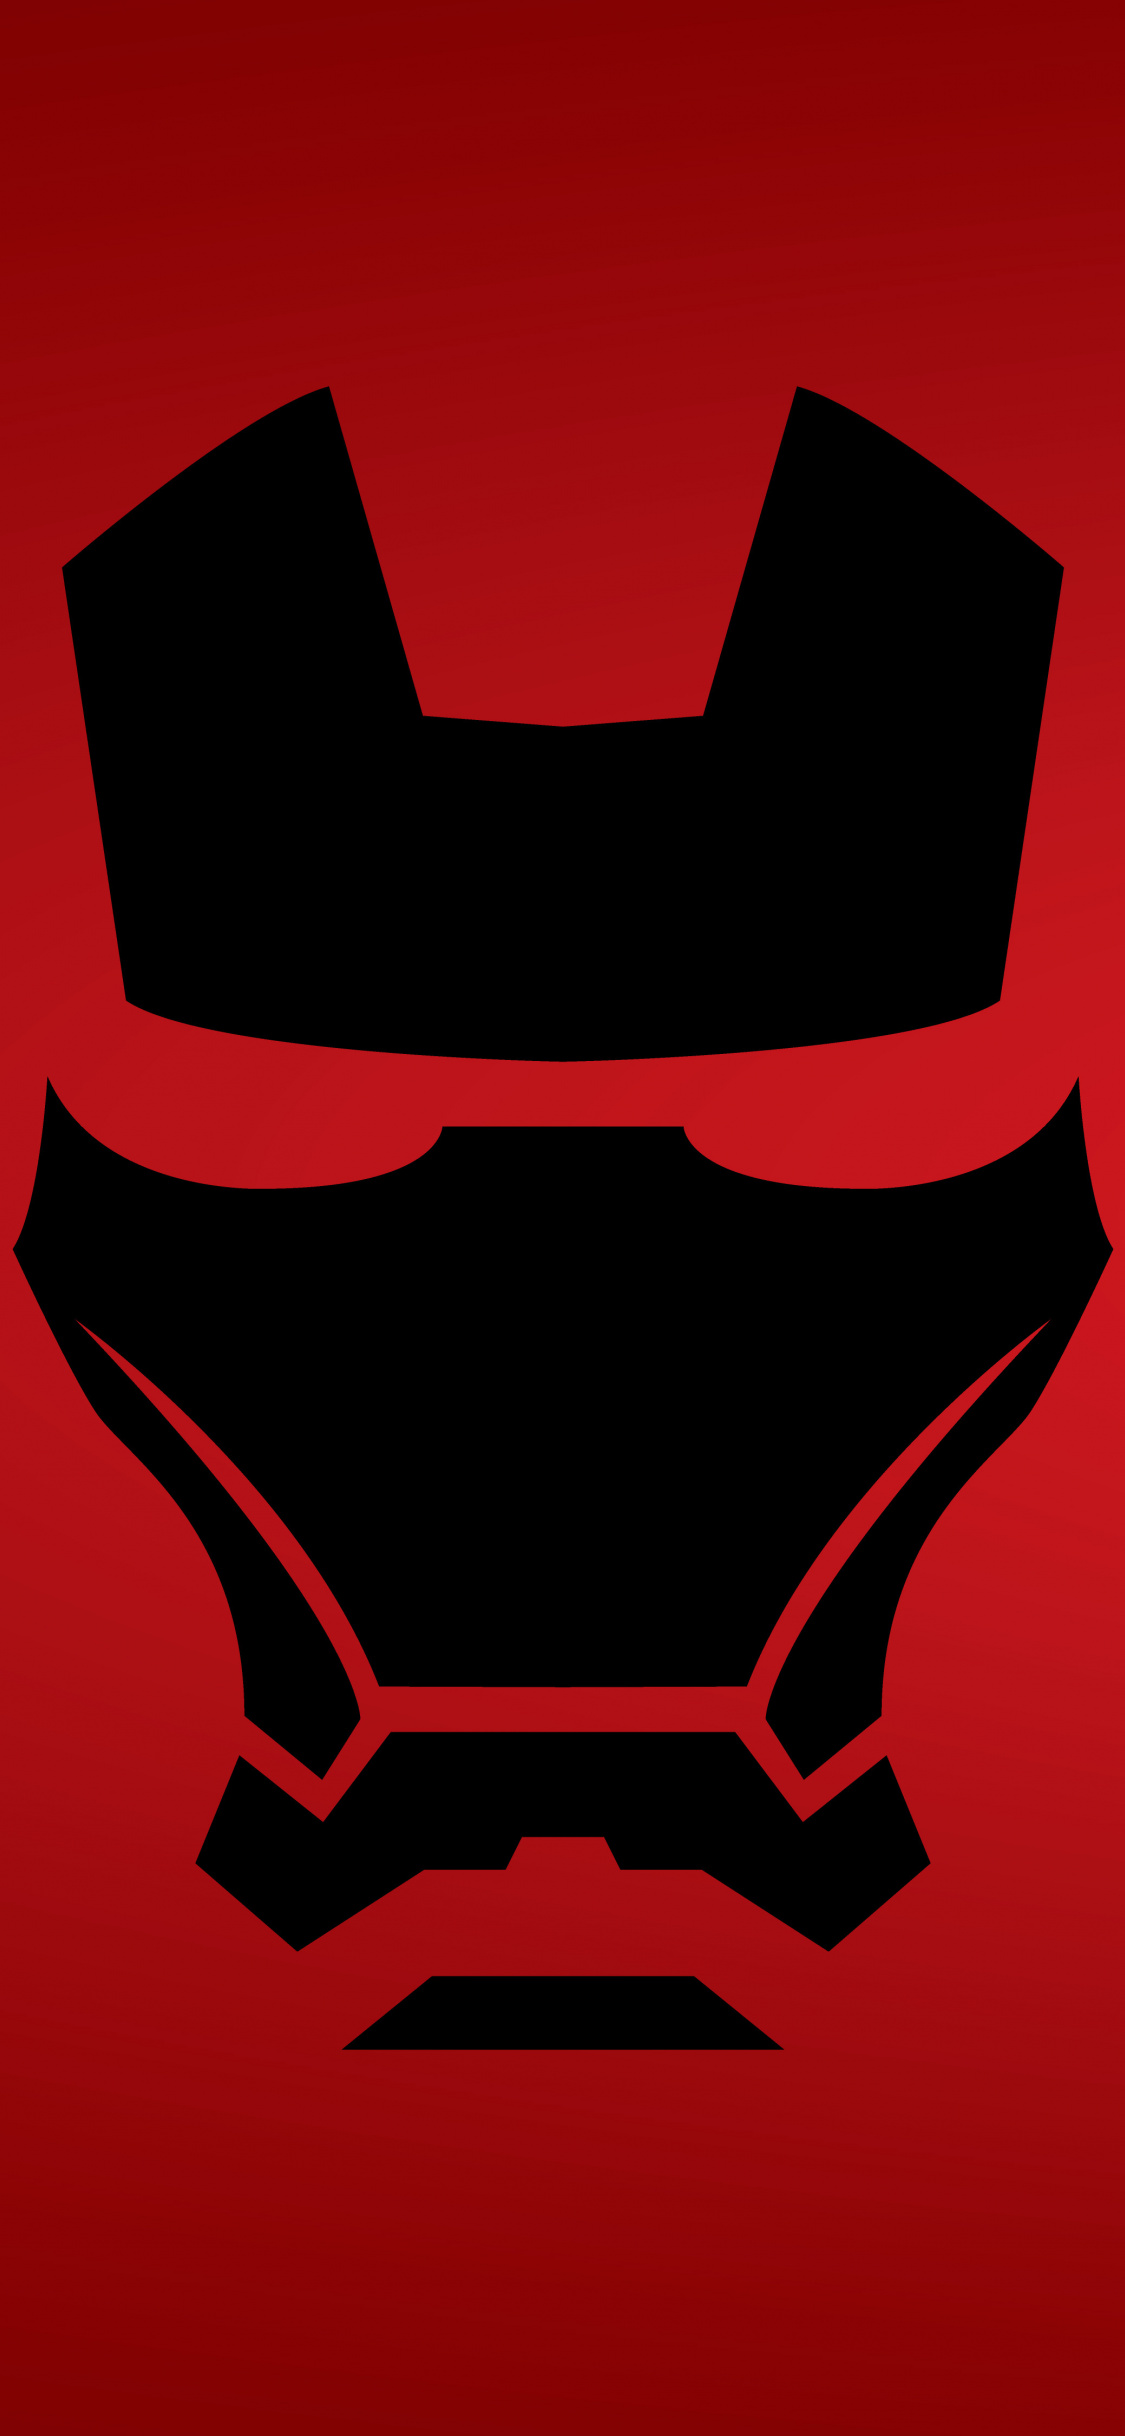 Wallpaper Iron Man Mask Dark Minimal iPhone